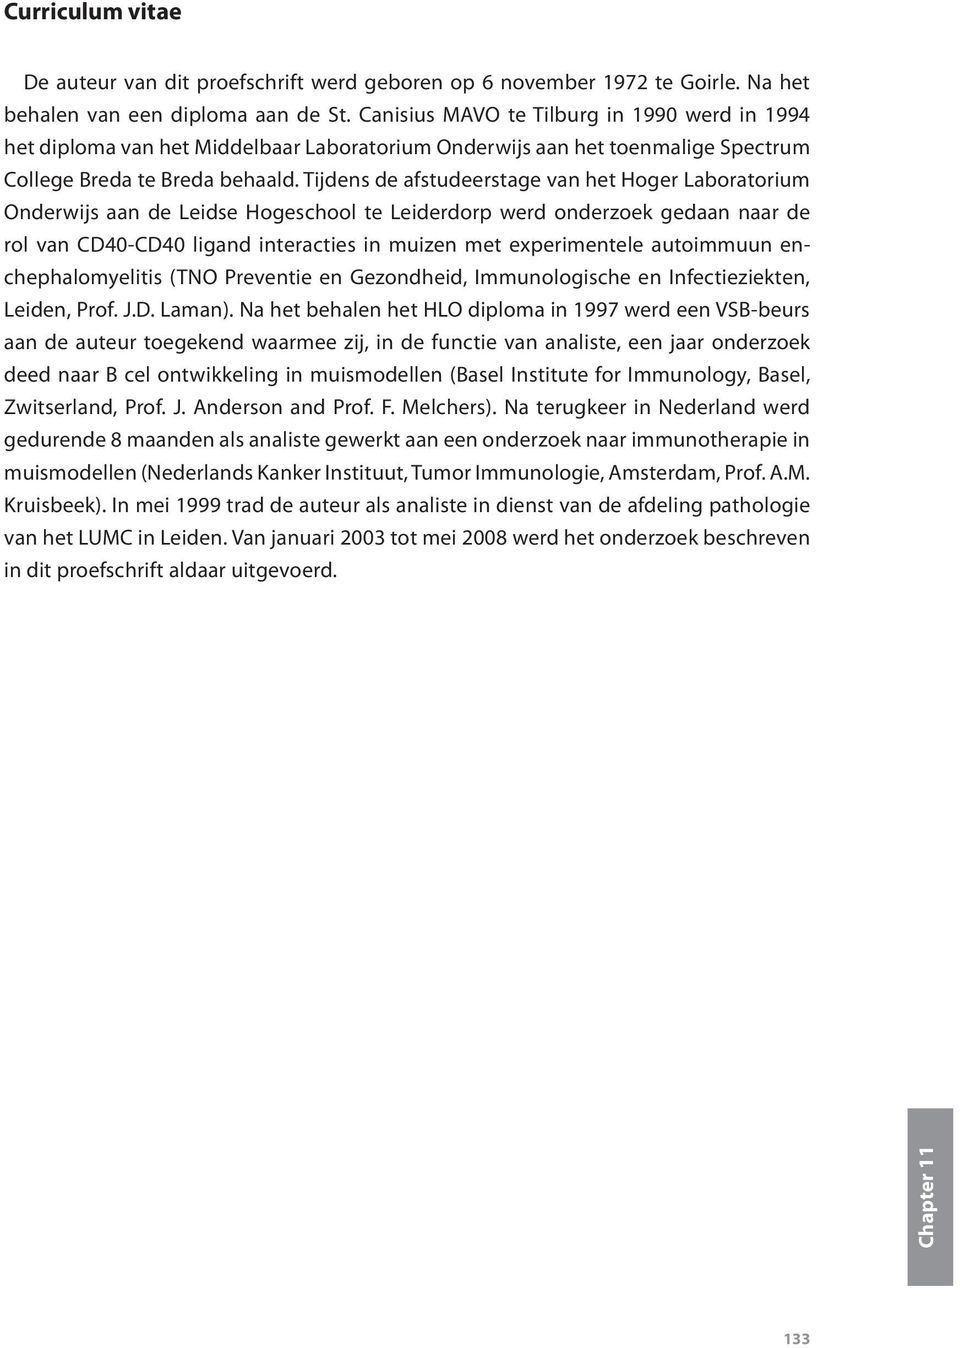 Tijdens de afstudeerstage van het Hoger Laboratorium Onderwijs aan de Leidse Hogeschool te Leiderdorp werd onderzoek gedaan naar de rol van CD40-CD40 ligand interacties in muizen met experimentele